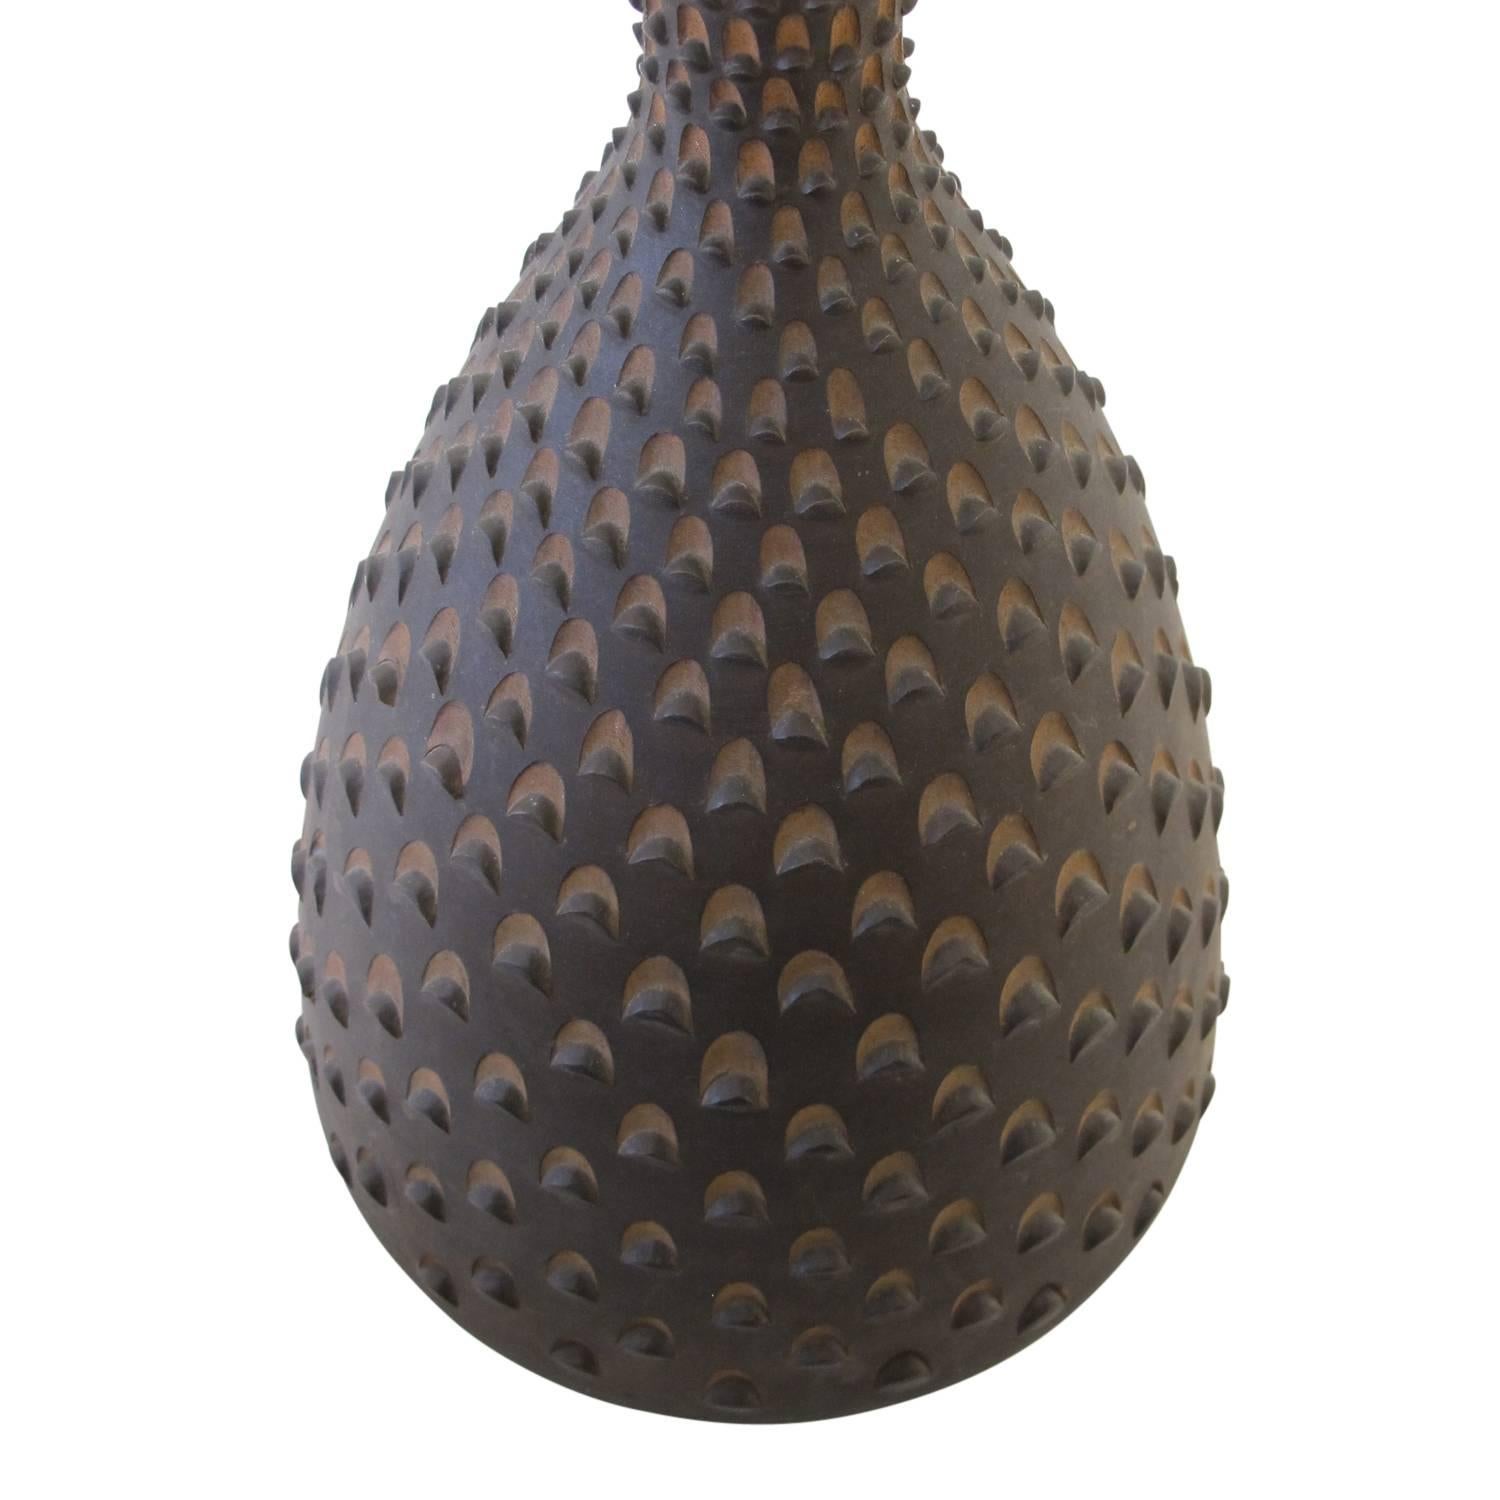 Glazed Zaccagnini Raymor Ceramic Vase Pinecone Italian 1950's